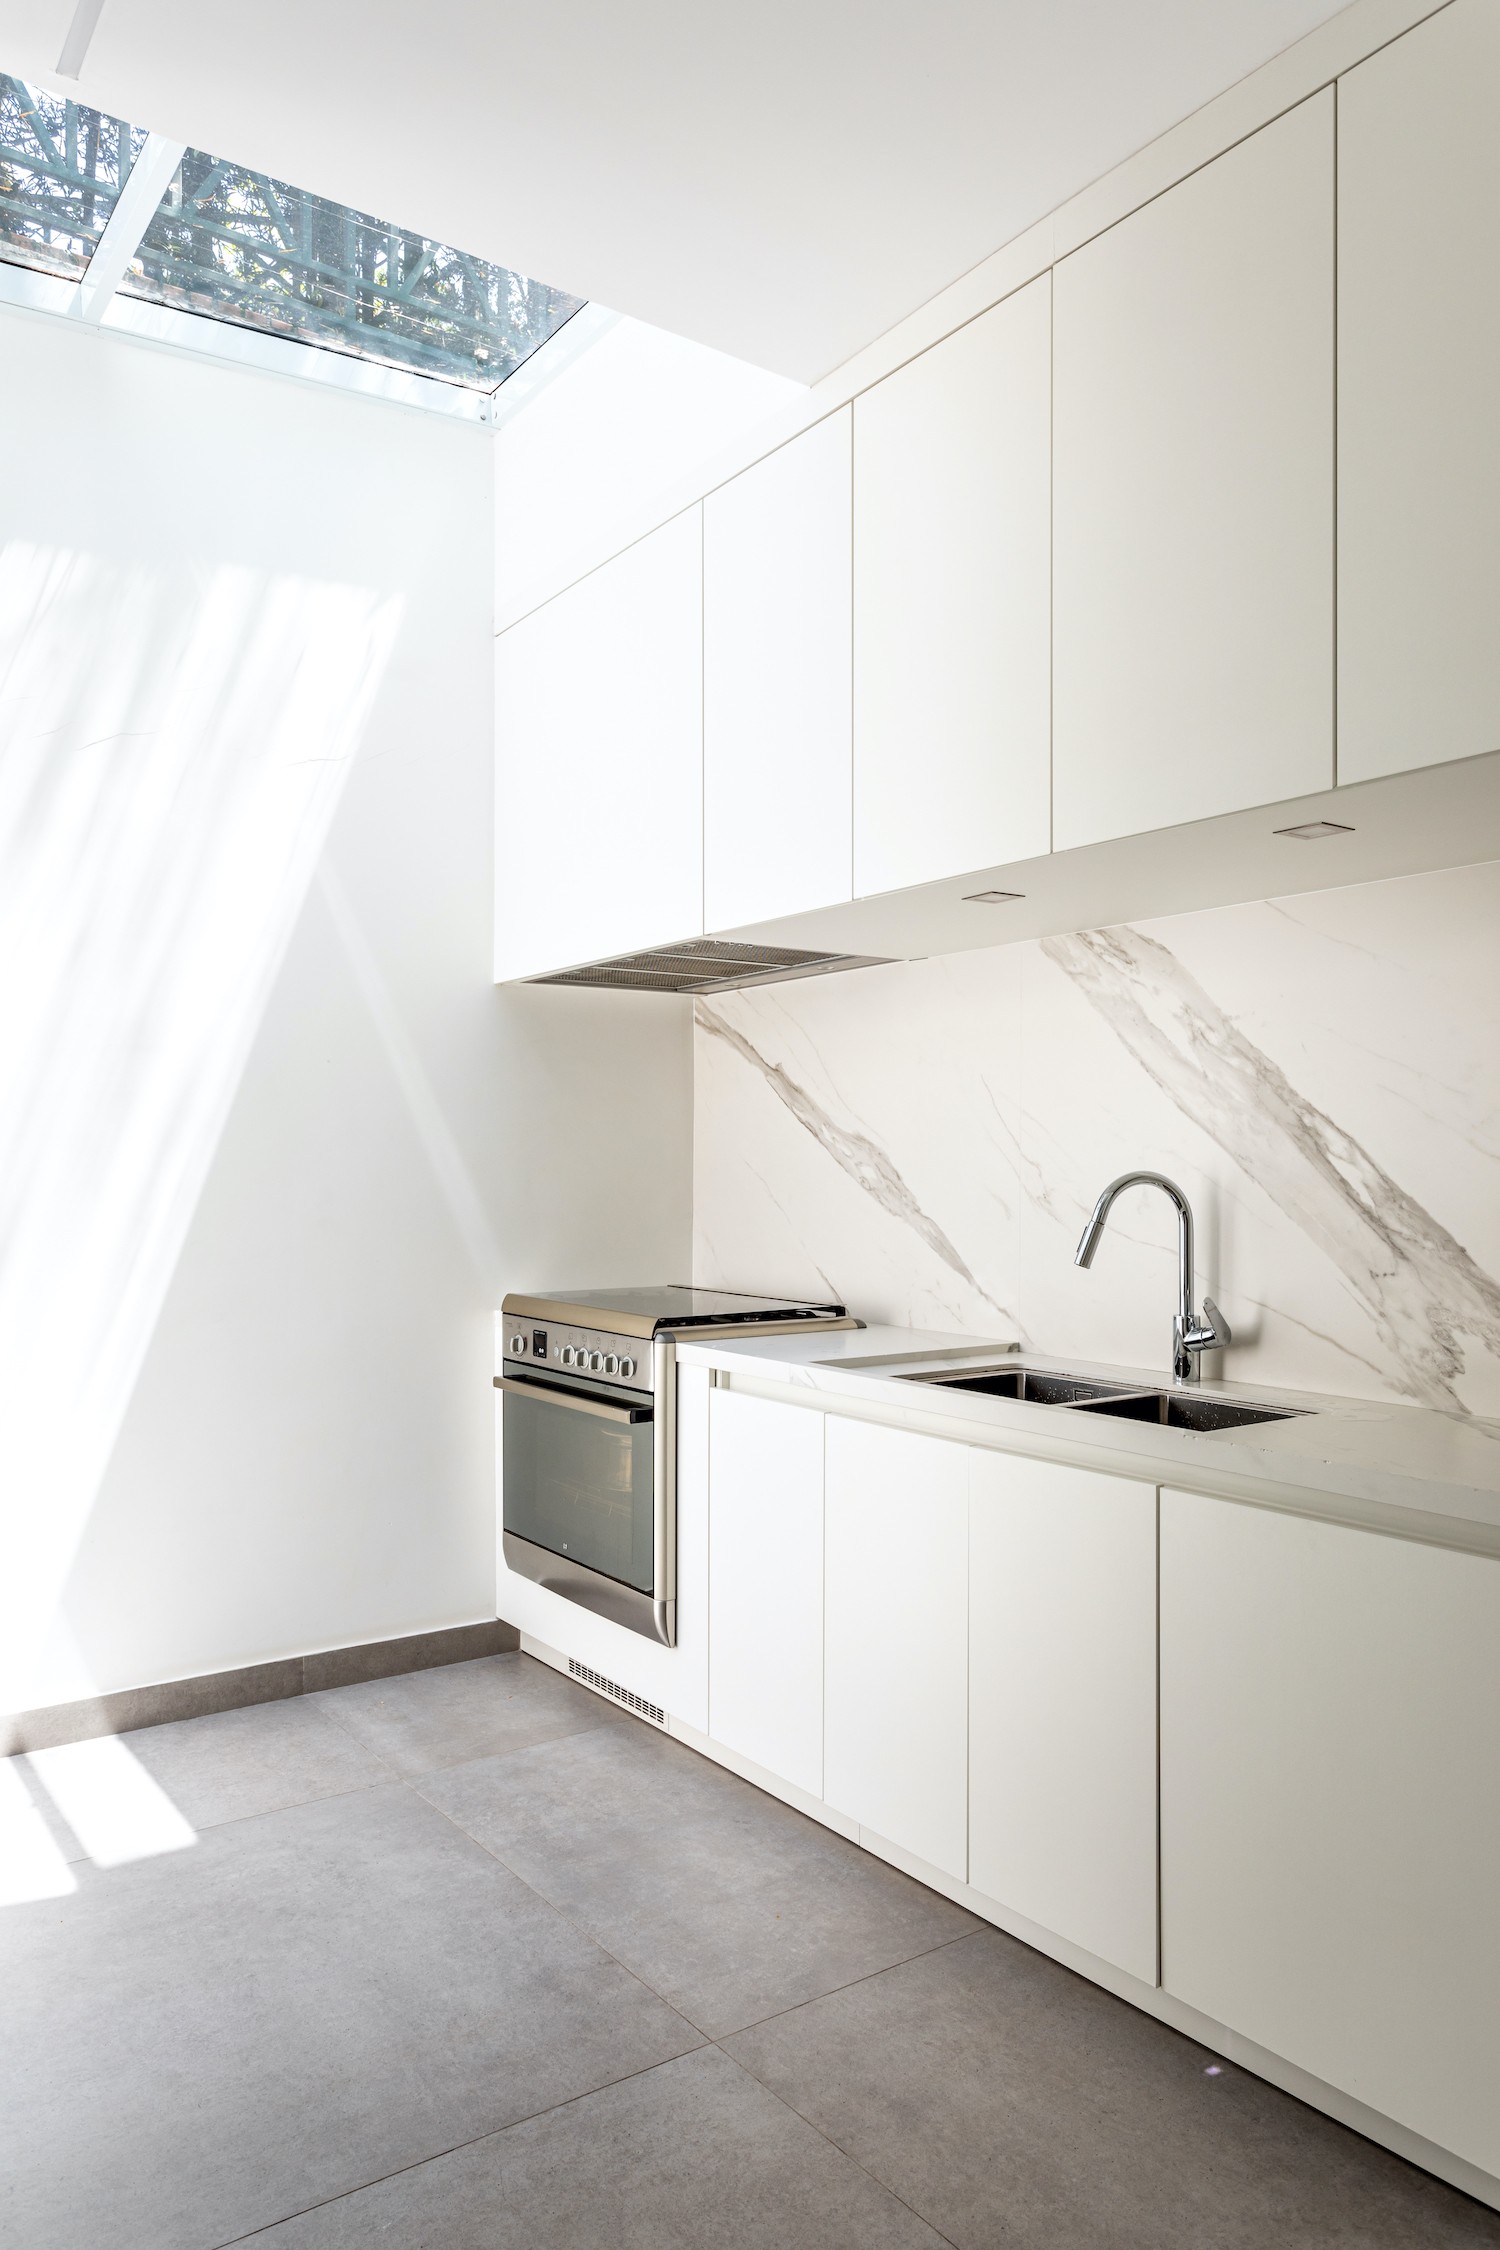 COZINHA | O branco predomina a cozinha. A claraboia foi uma solução para trazer mais iluminação natural para o ambiente (Foto: Divulgação / )